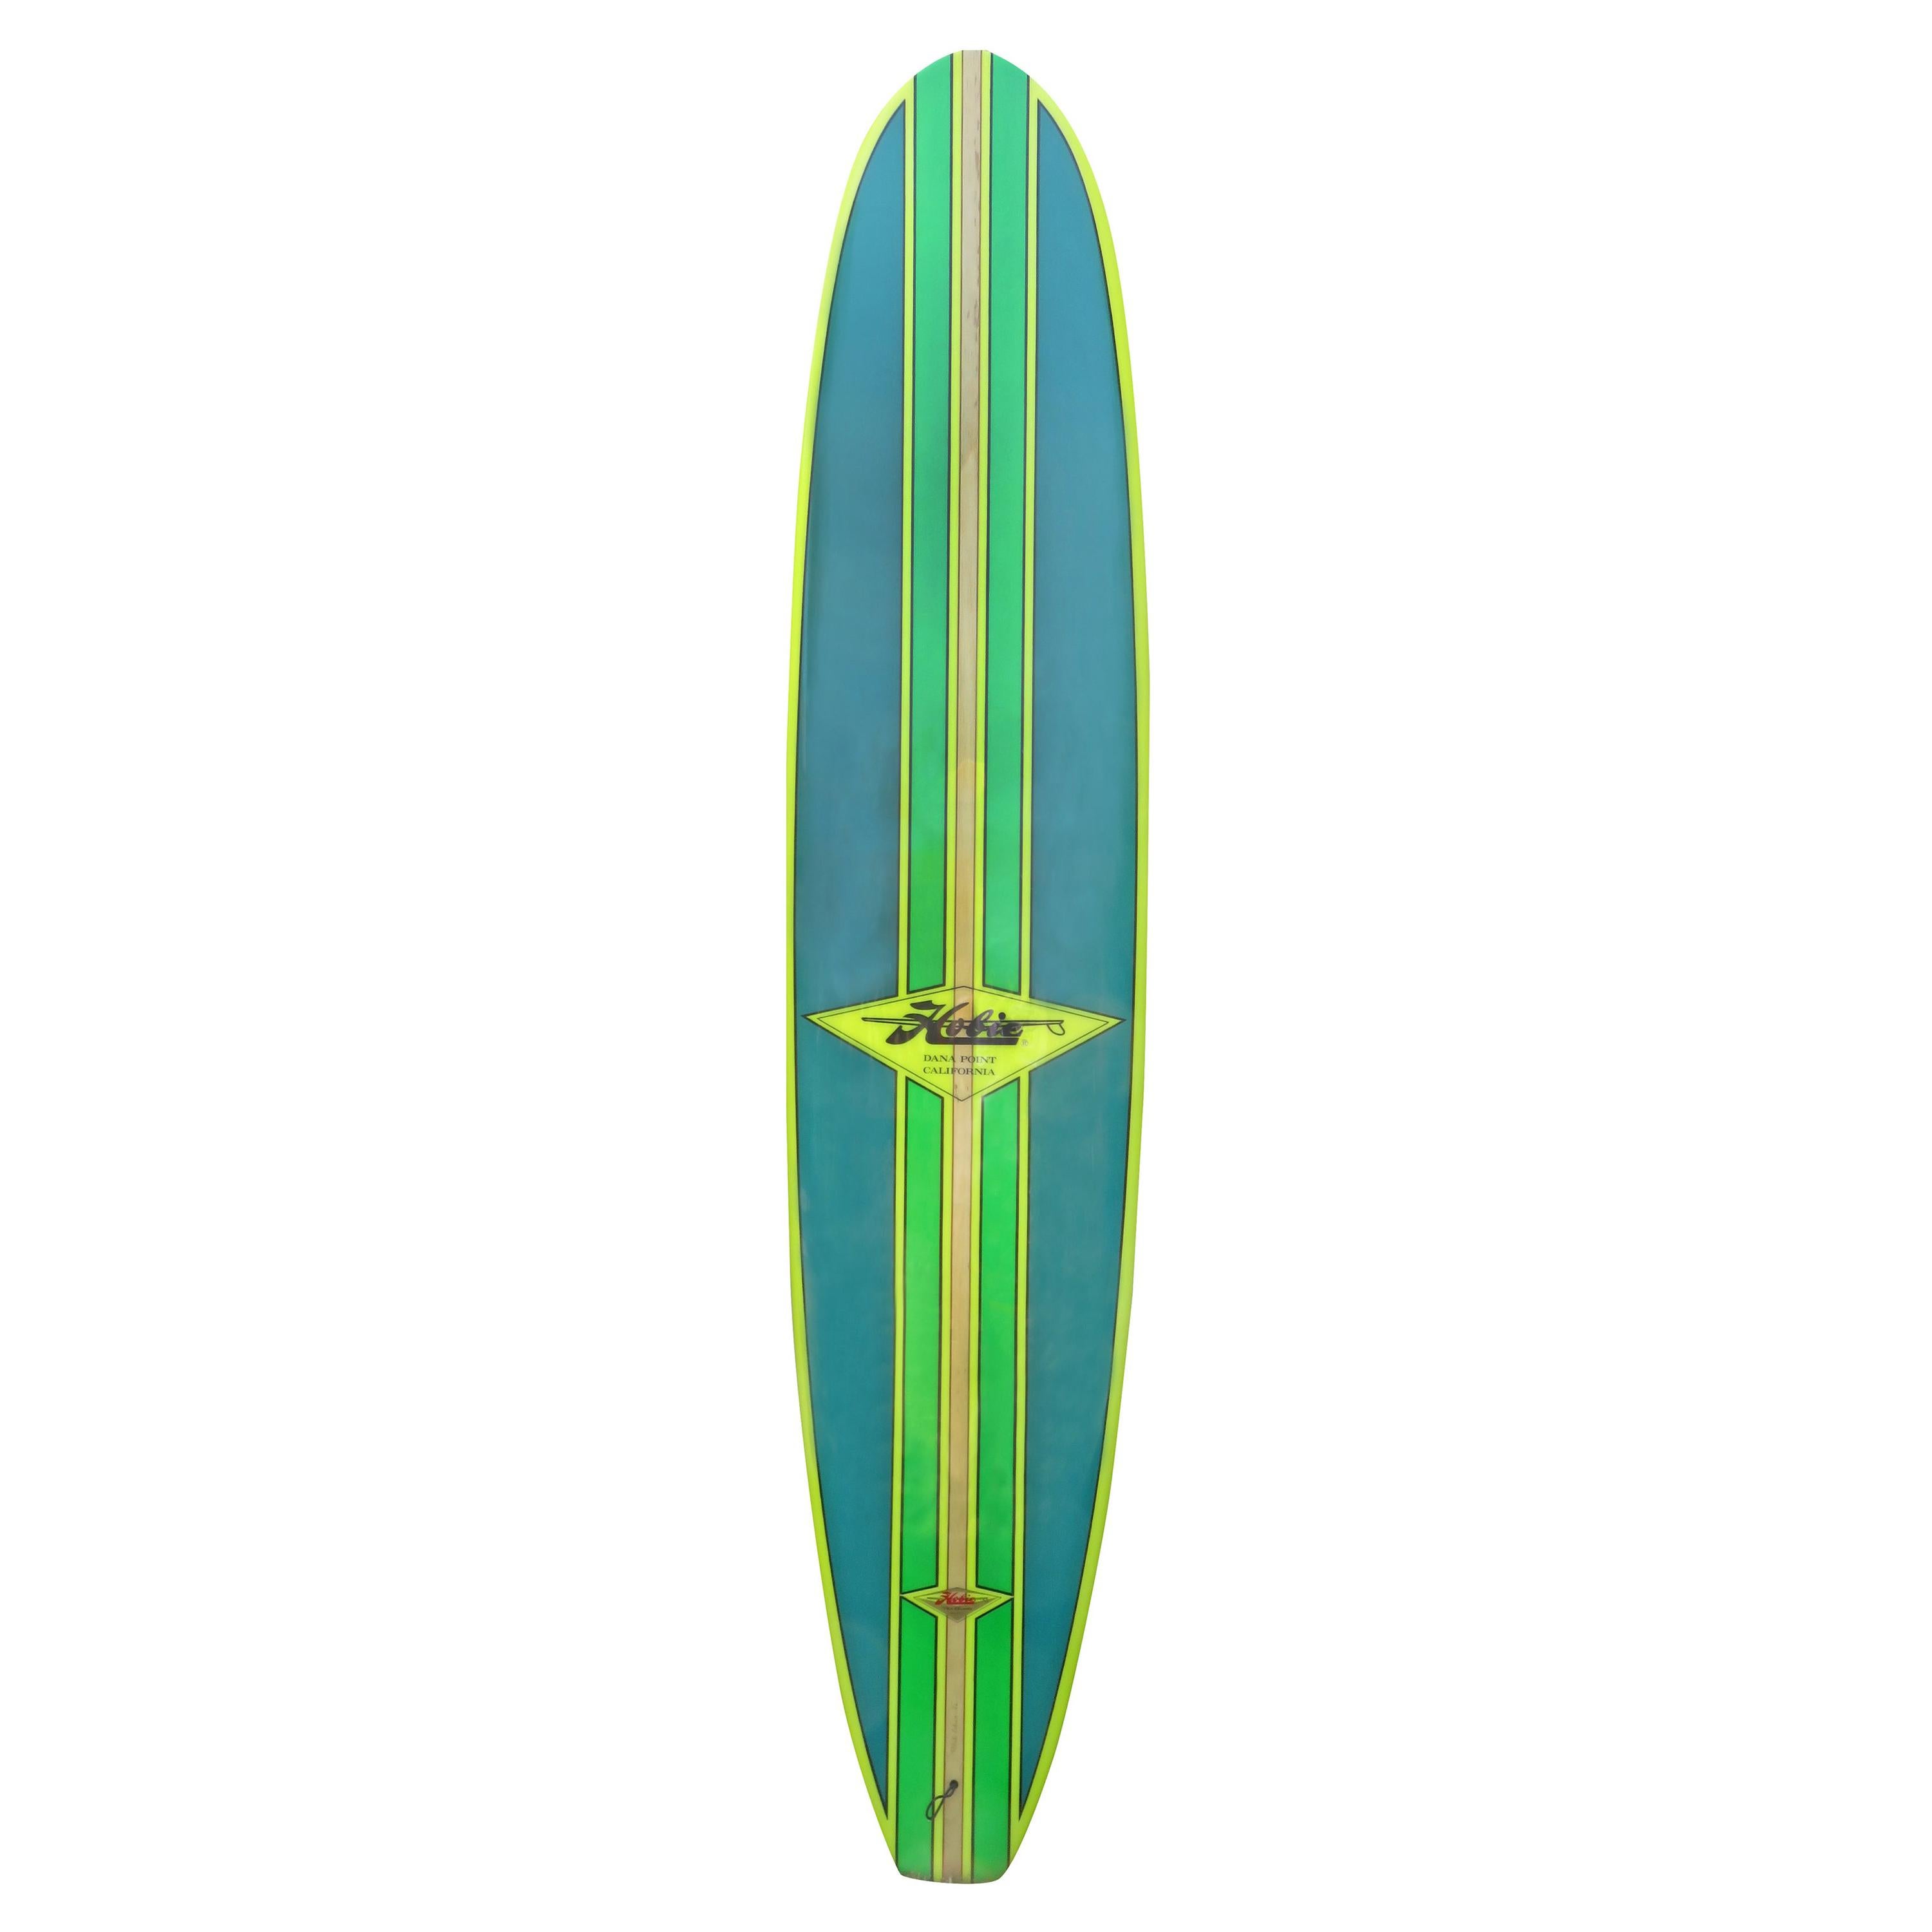 1990s Hobie Phil Edwards model longboard surfboard